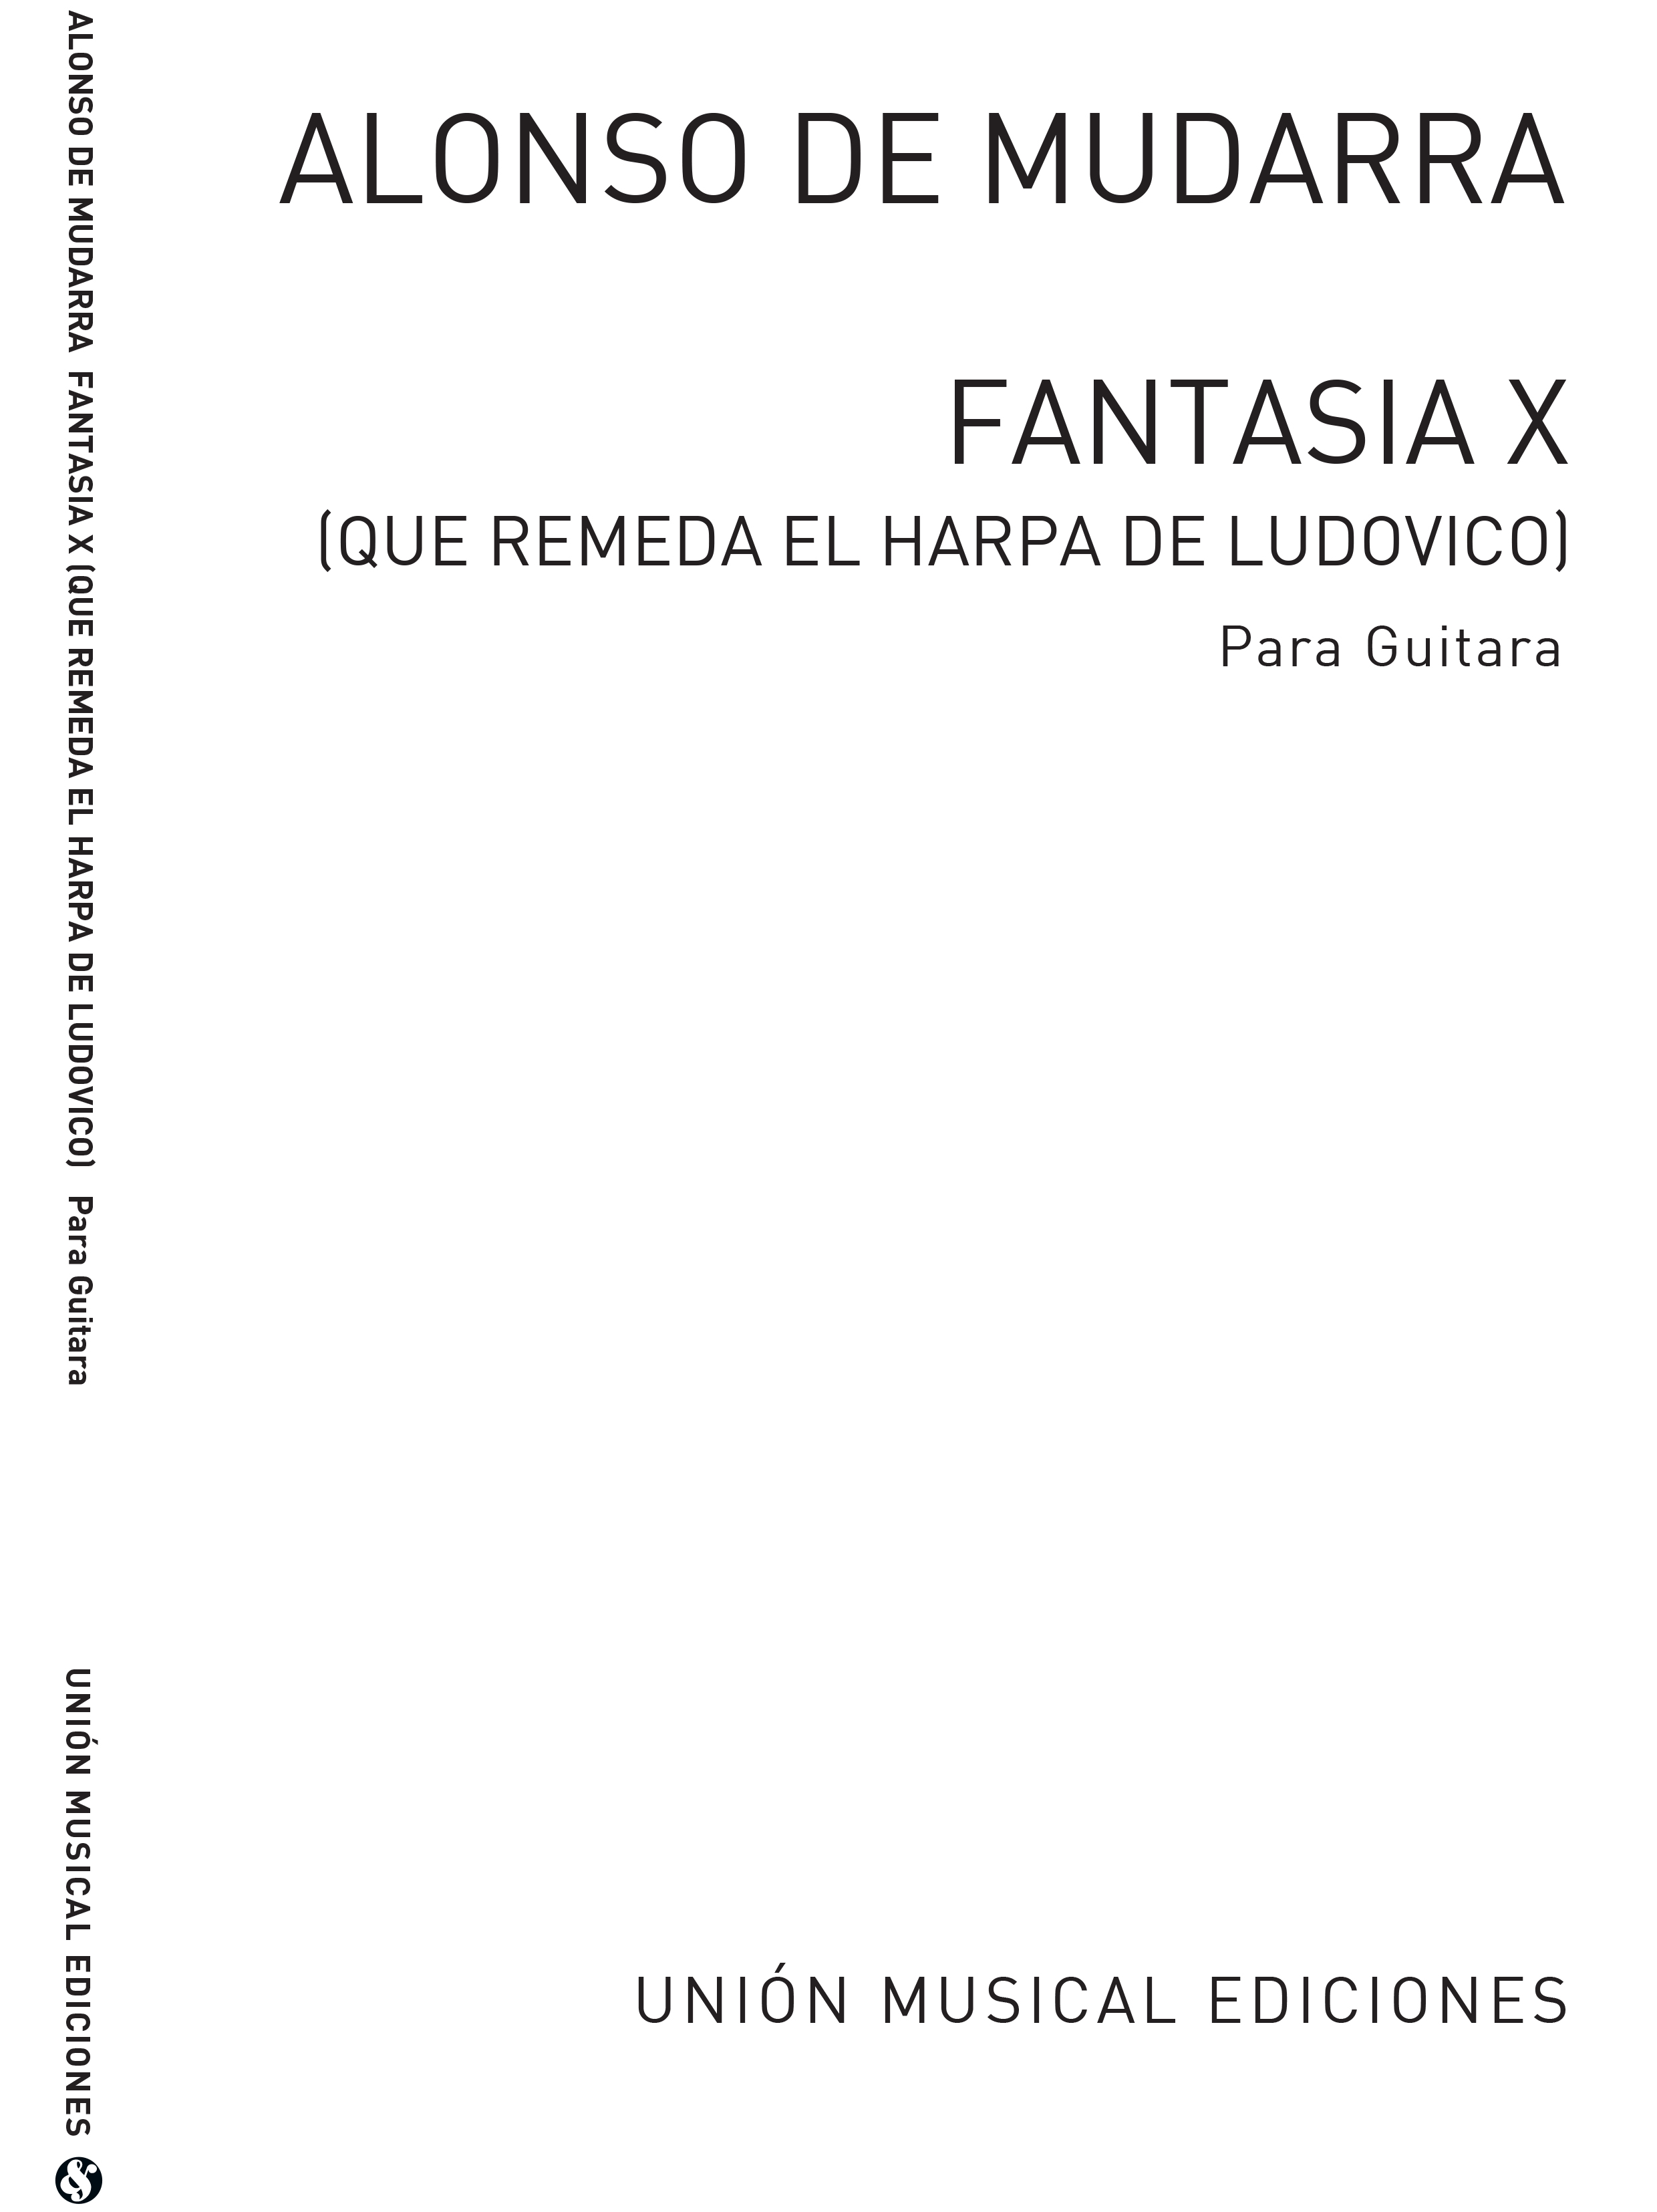 Alonso de Mudarra: Fantasia X Que Remeda El Arpa De Ludovico: Guitar: